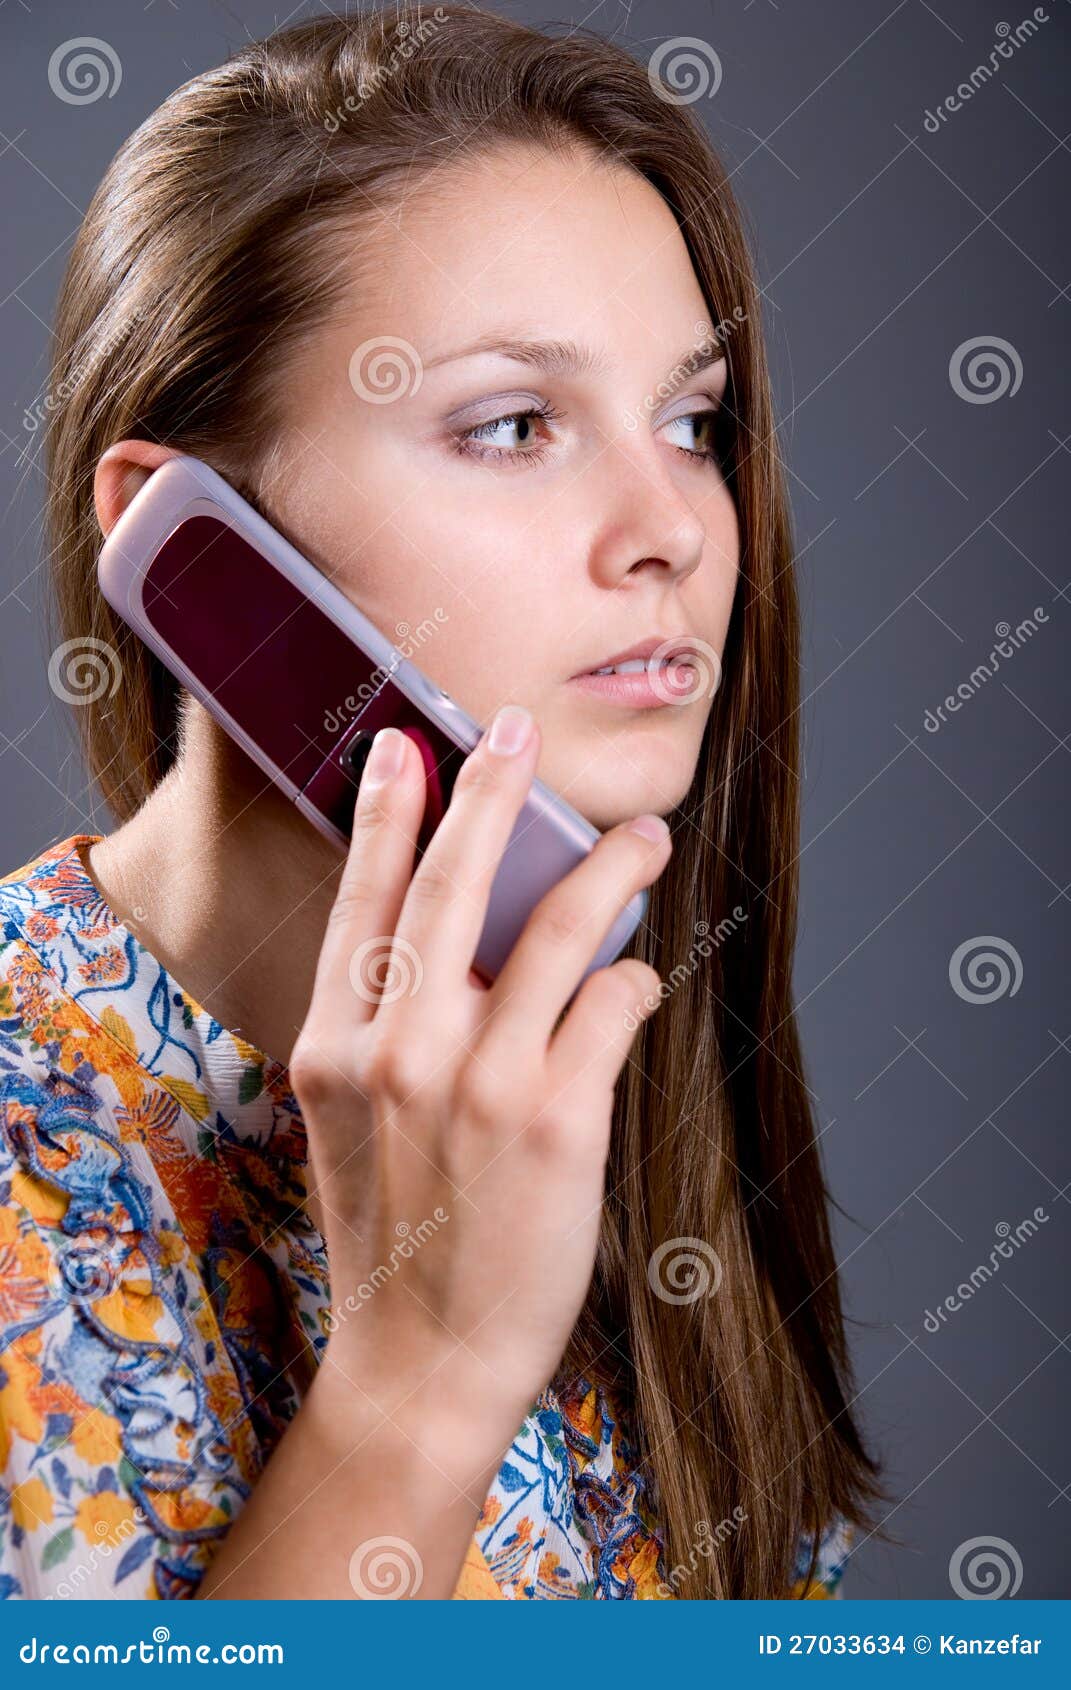 Посмотрел телефон жены. Девушка с телефоном. Фото с телефона девушки. Девушка с мобильным телефоном. Девушка говорит.